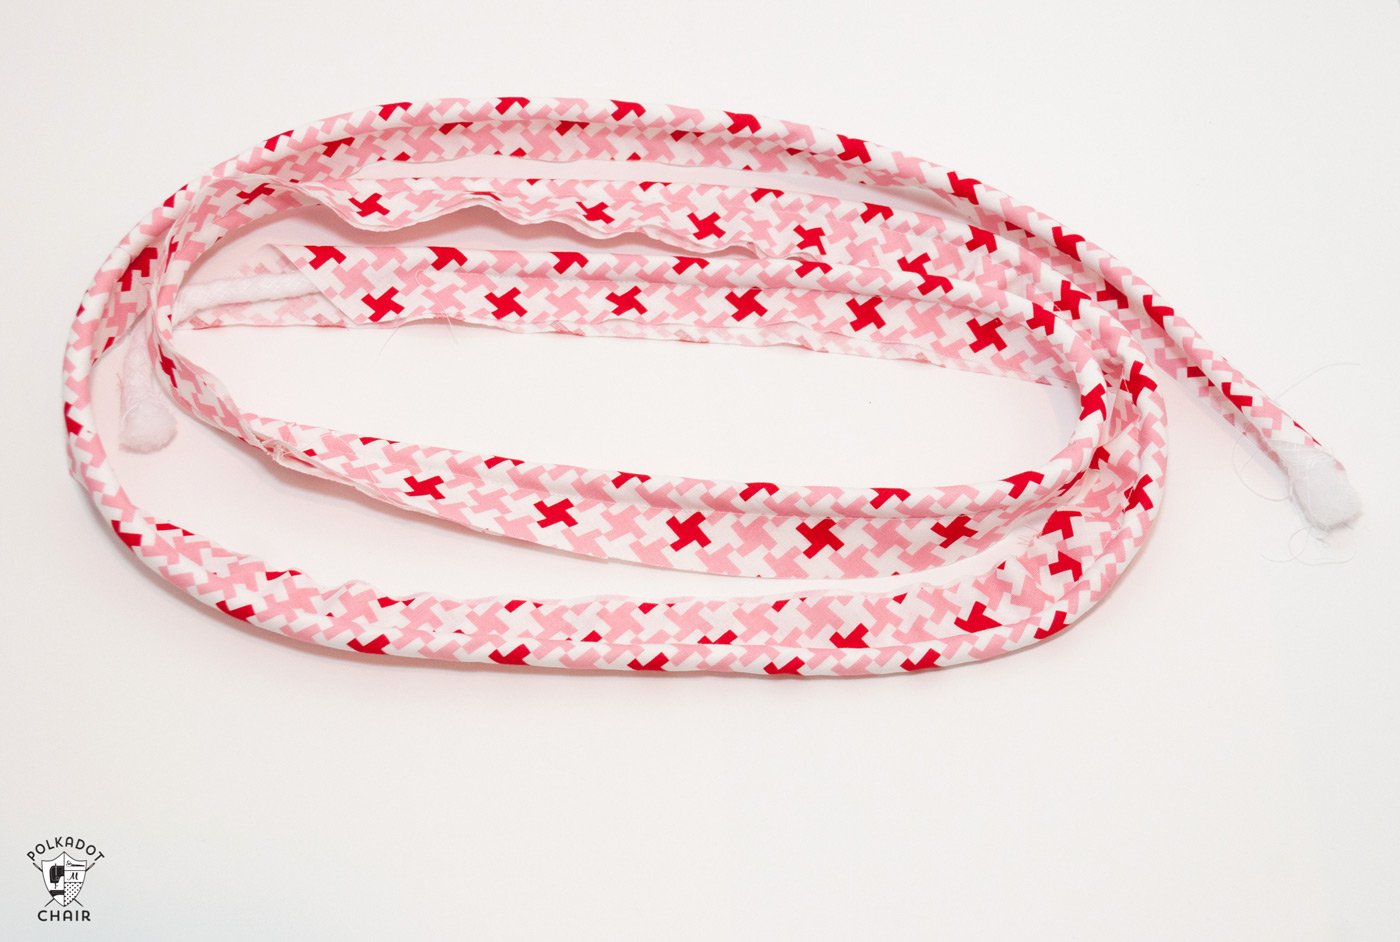 tissu rouge et blanc sur tapis de découpe blanc